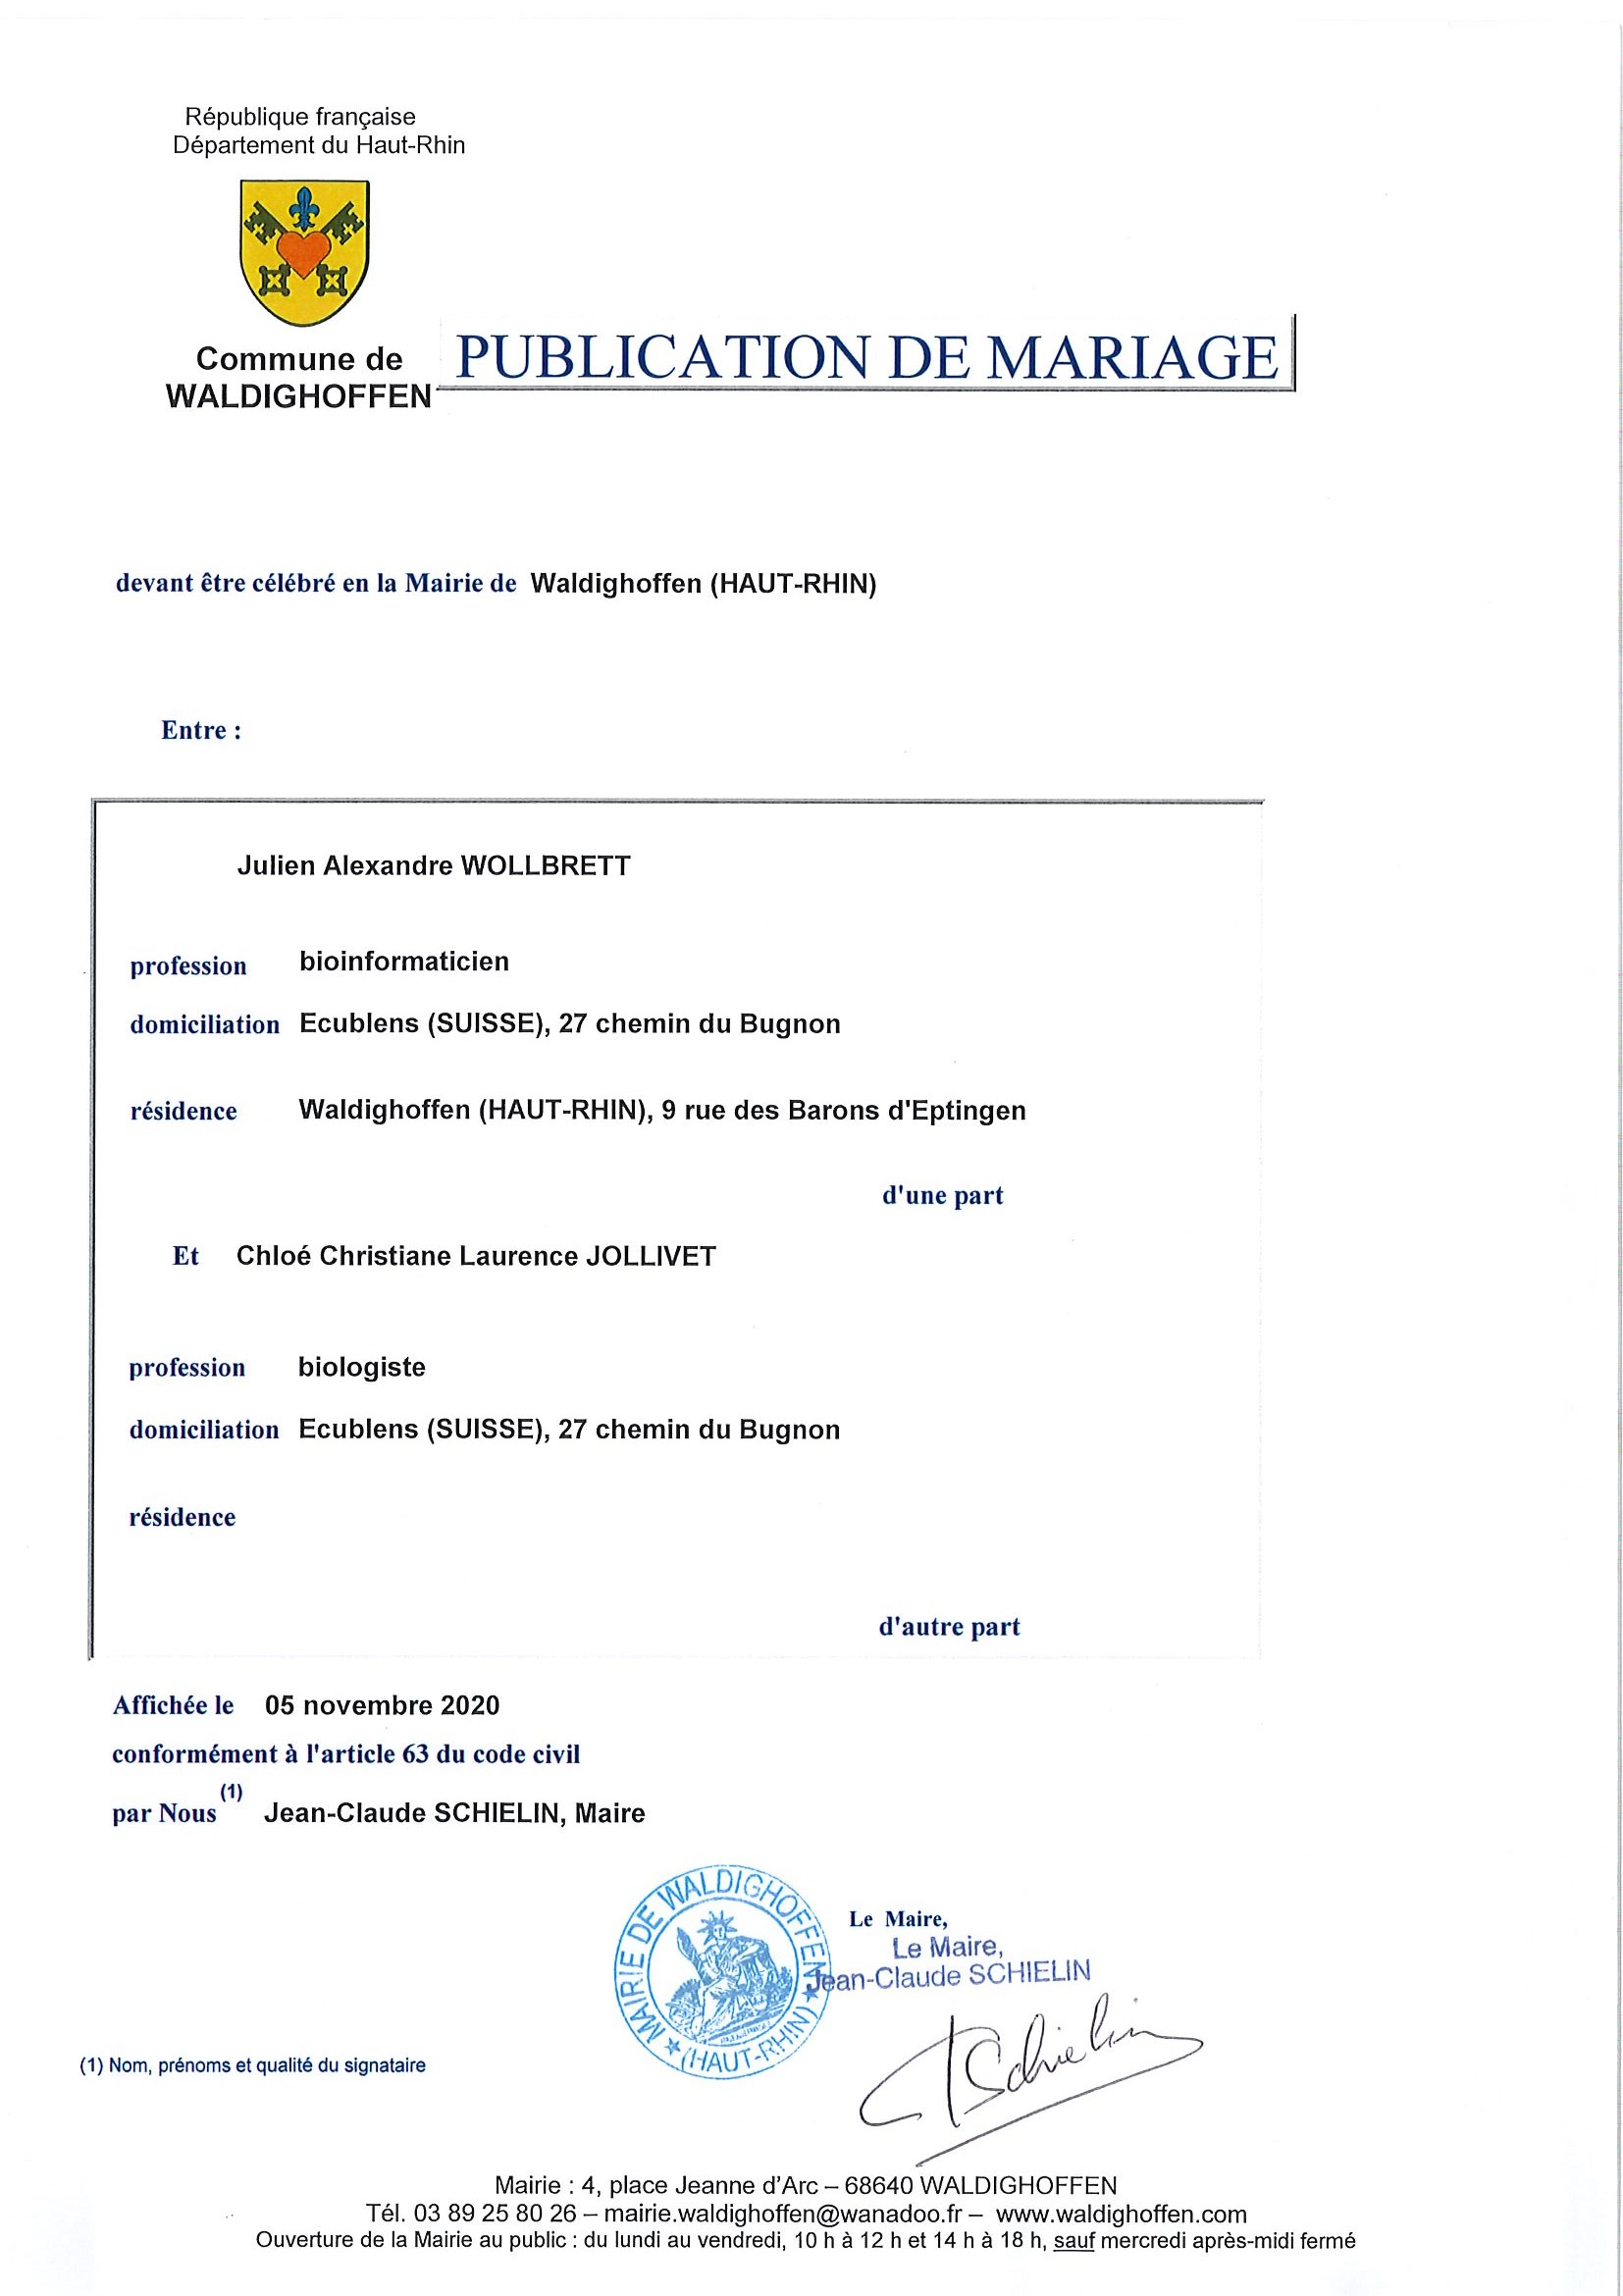 Publication de mariage entre M. Julien WOLLBRETT et Mme Chloé JOLLIVET